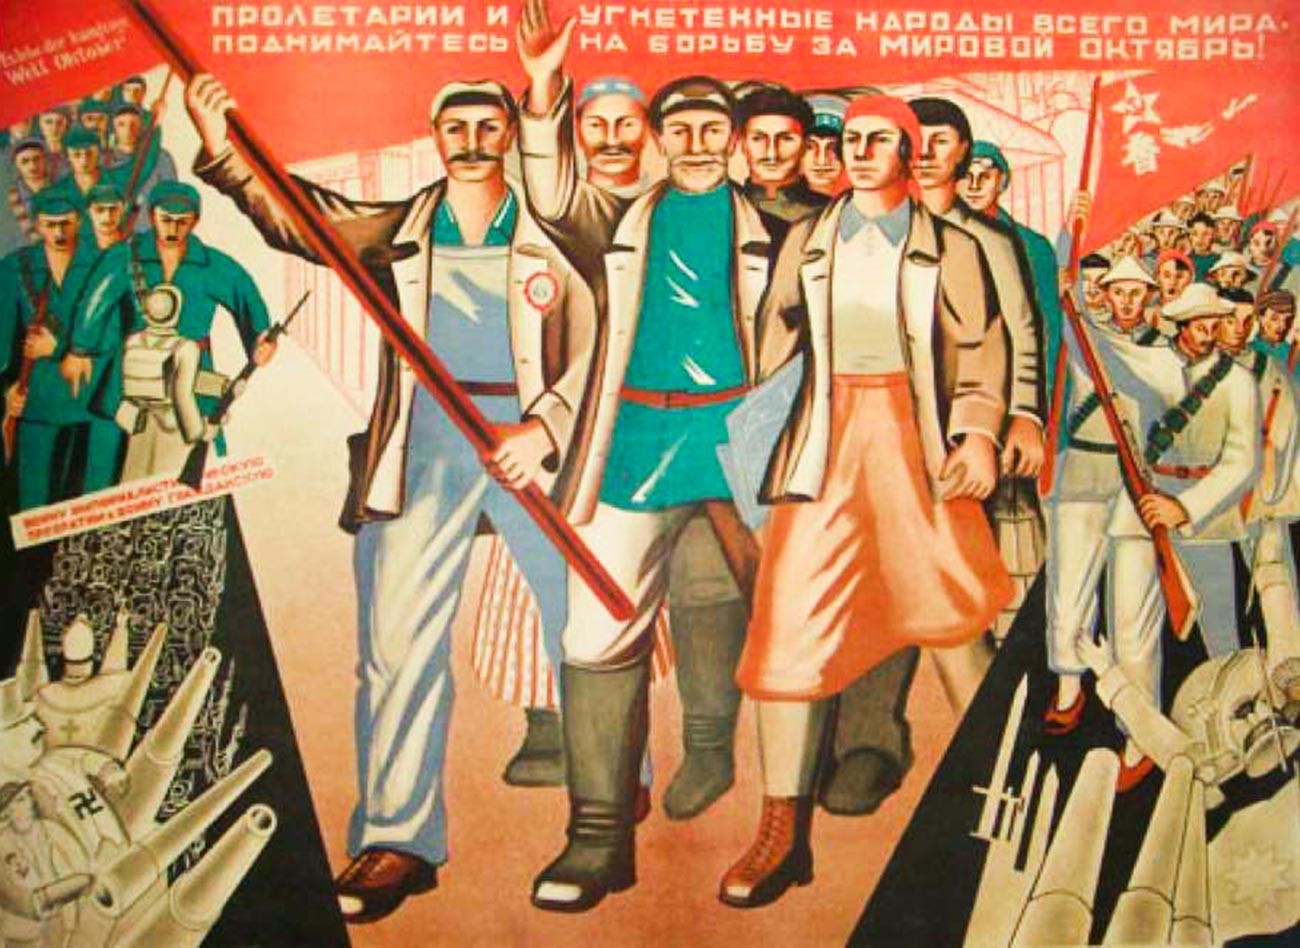 Рабочий класс в советском обществе. Плакаты Всемирная Октябрьская Социалистическая революция. Советские революционные плакаты. Агитационные плакаты 1920 х годов. Пролетариат плакаты.